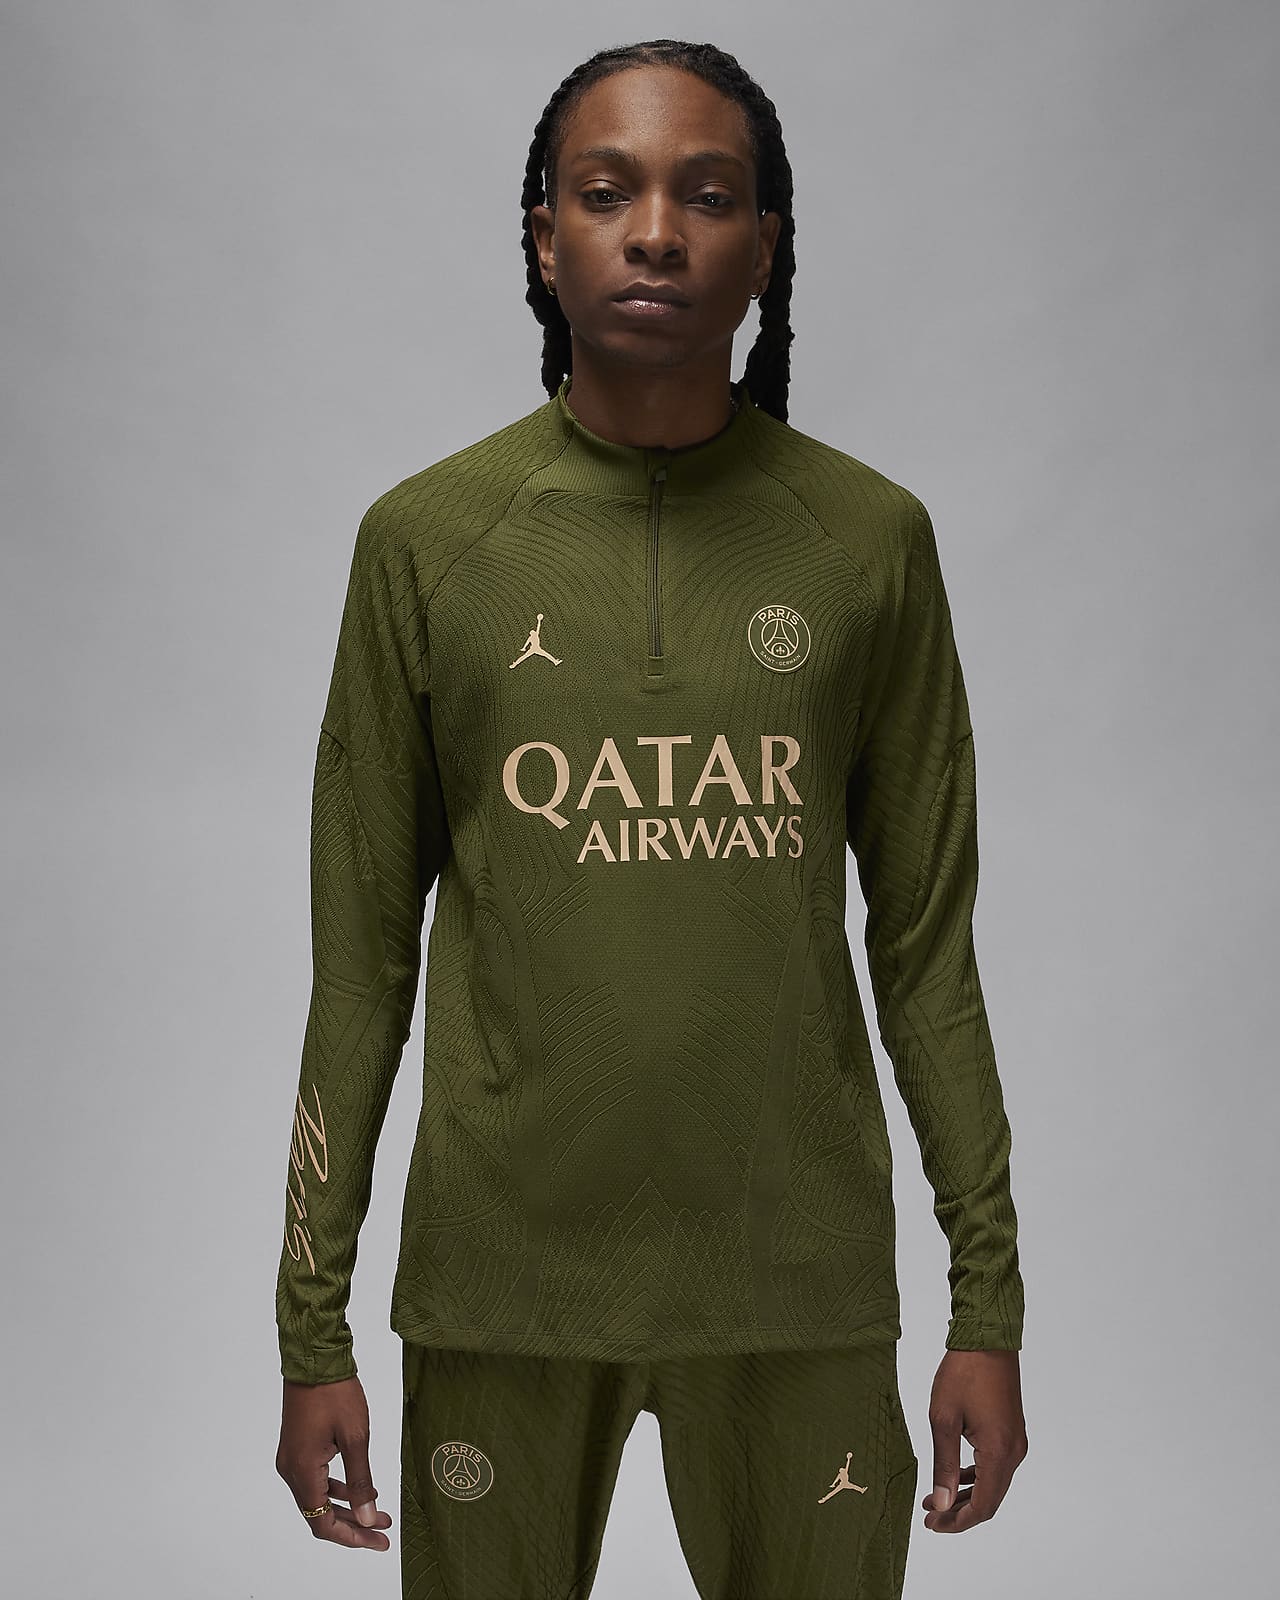 Ανδρική ποδοσφαιρική μπλούζα προπόνησης Jordan Dri-FIT ADV δεύτερης εναλλακτικής εμφάνισης Παρί Σεν Ζερμέν Strike Elite